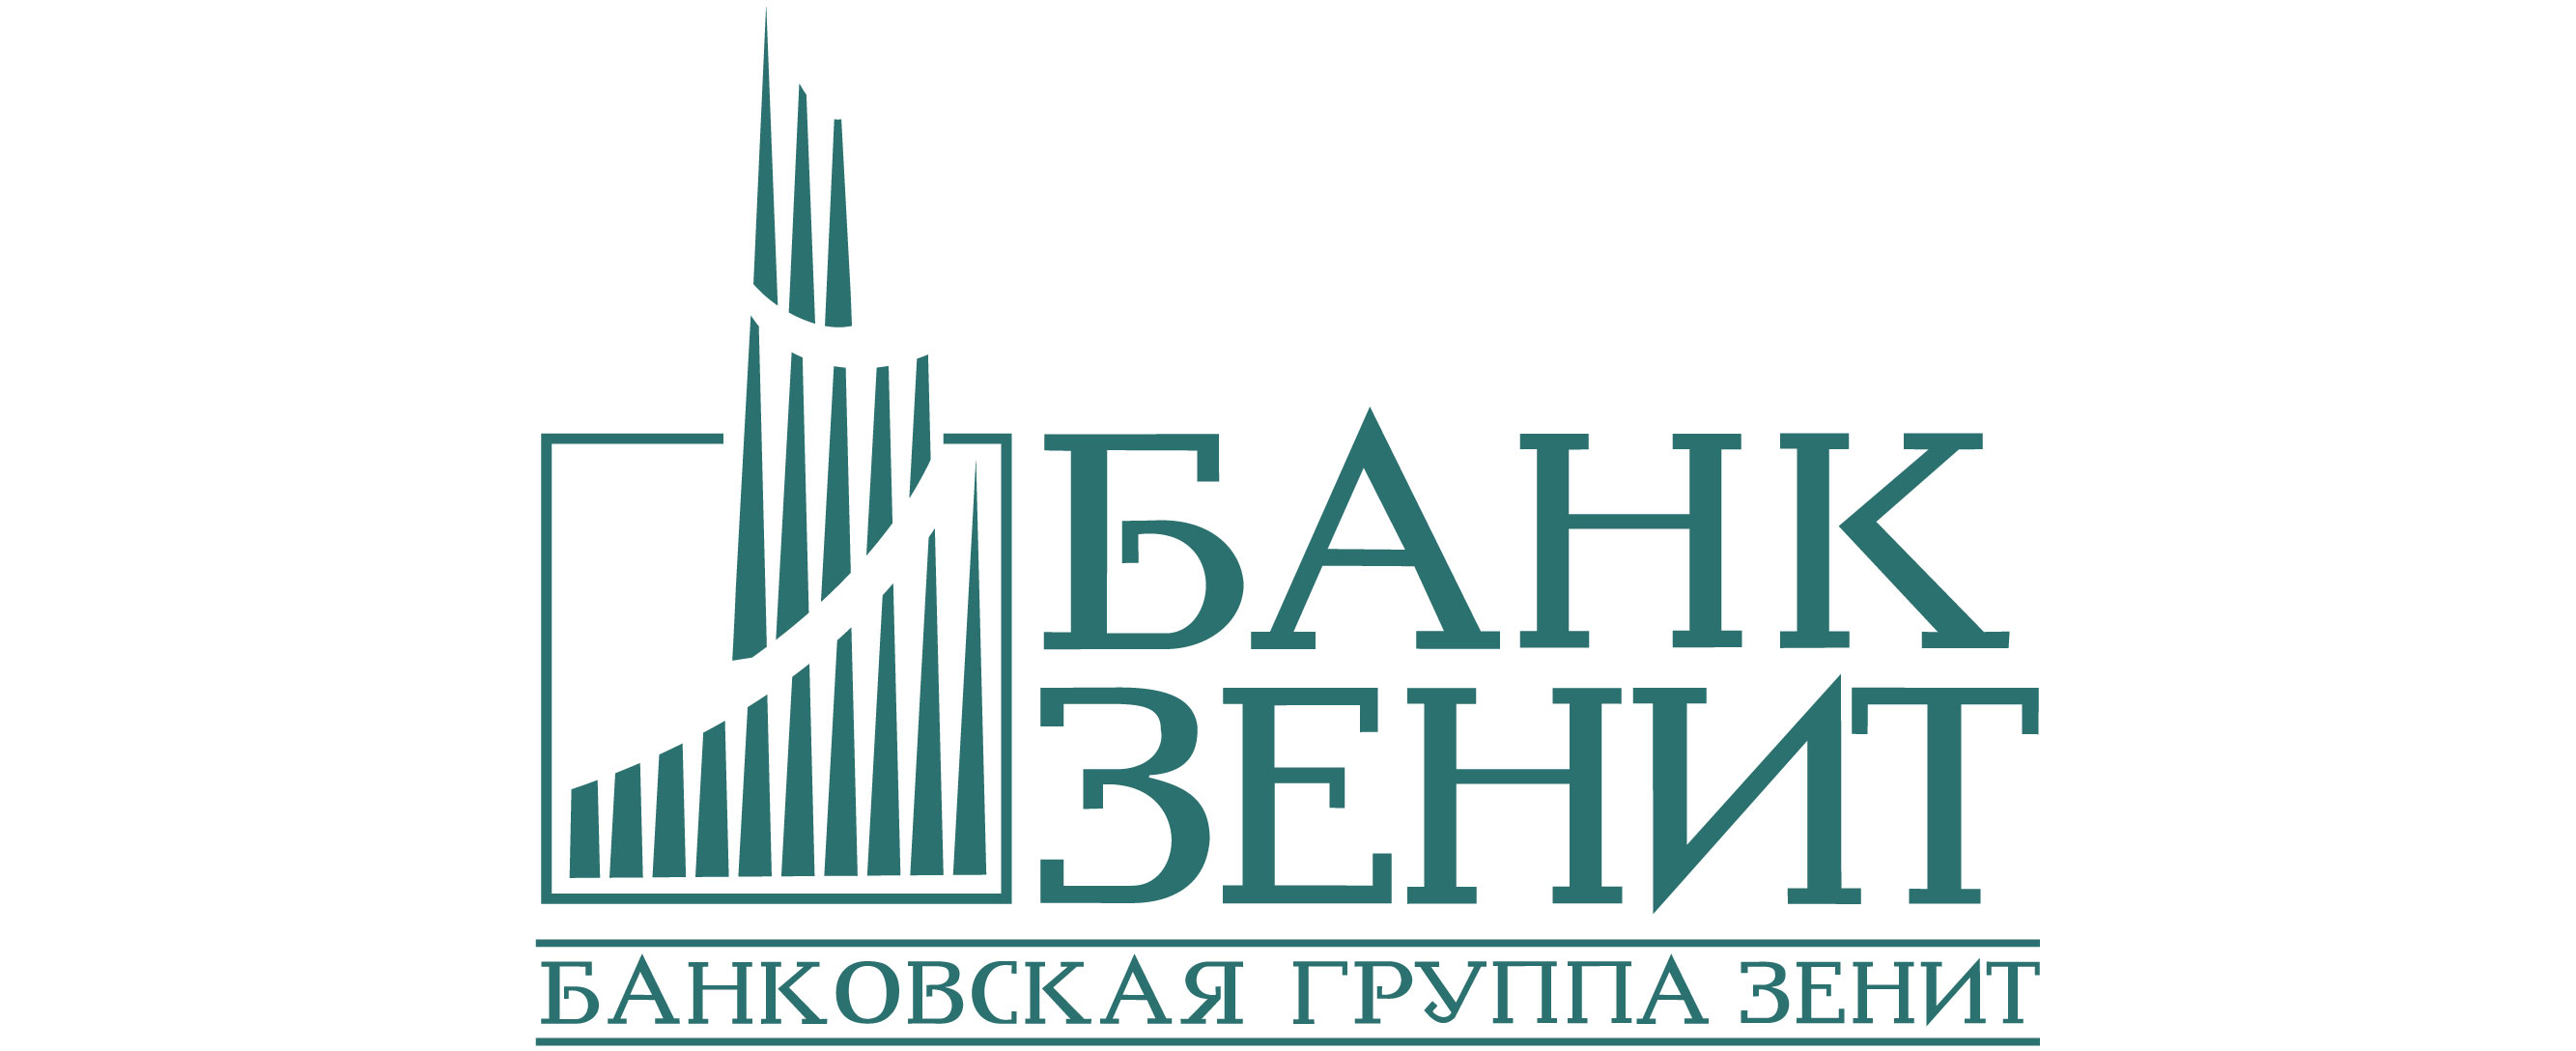 Сайт Банка ЗЕНИТ получил награды одного из старейших конкурсов Рунета «Золотой сайт»